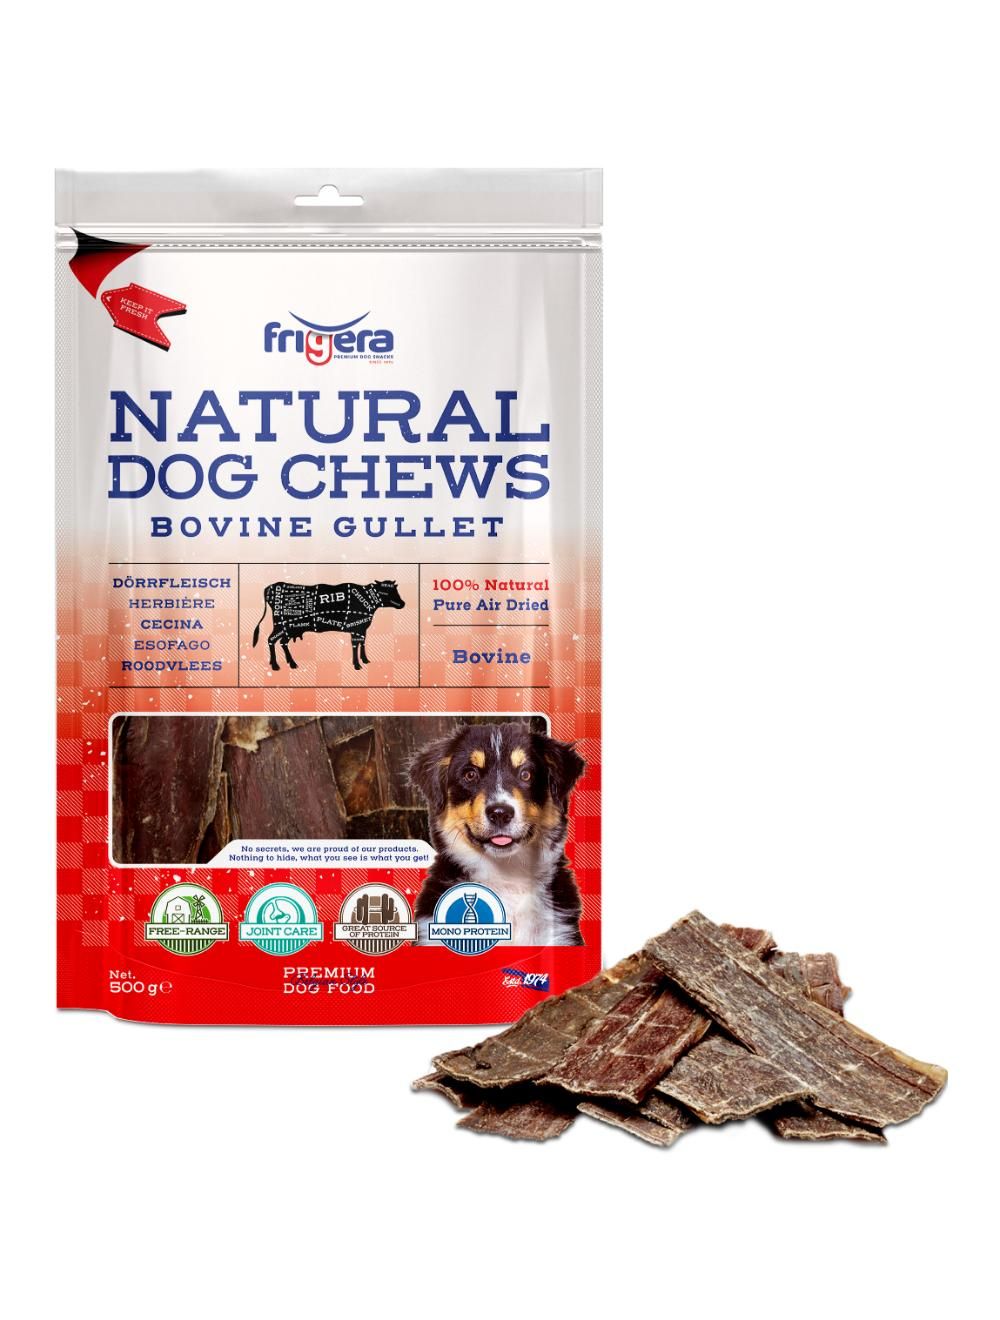 Frigera - Natural Dog Chews Bovine gullet 500 g - (402285851798) - Kjæledyr og utstyr